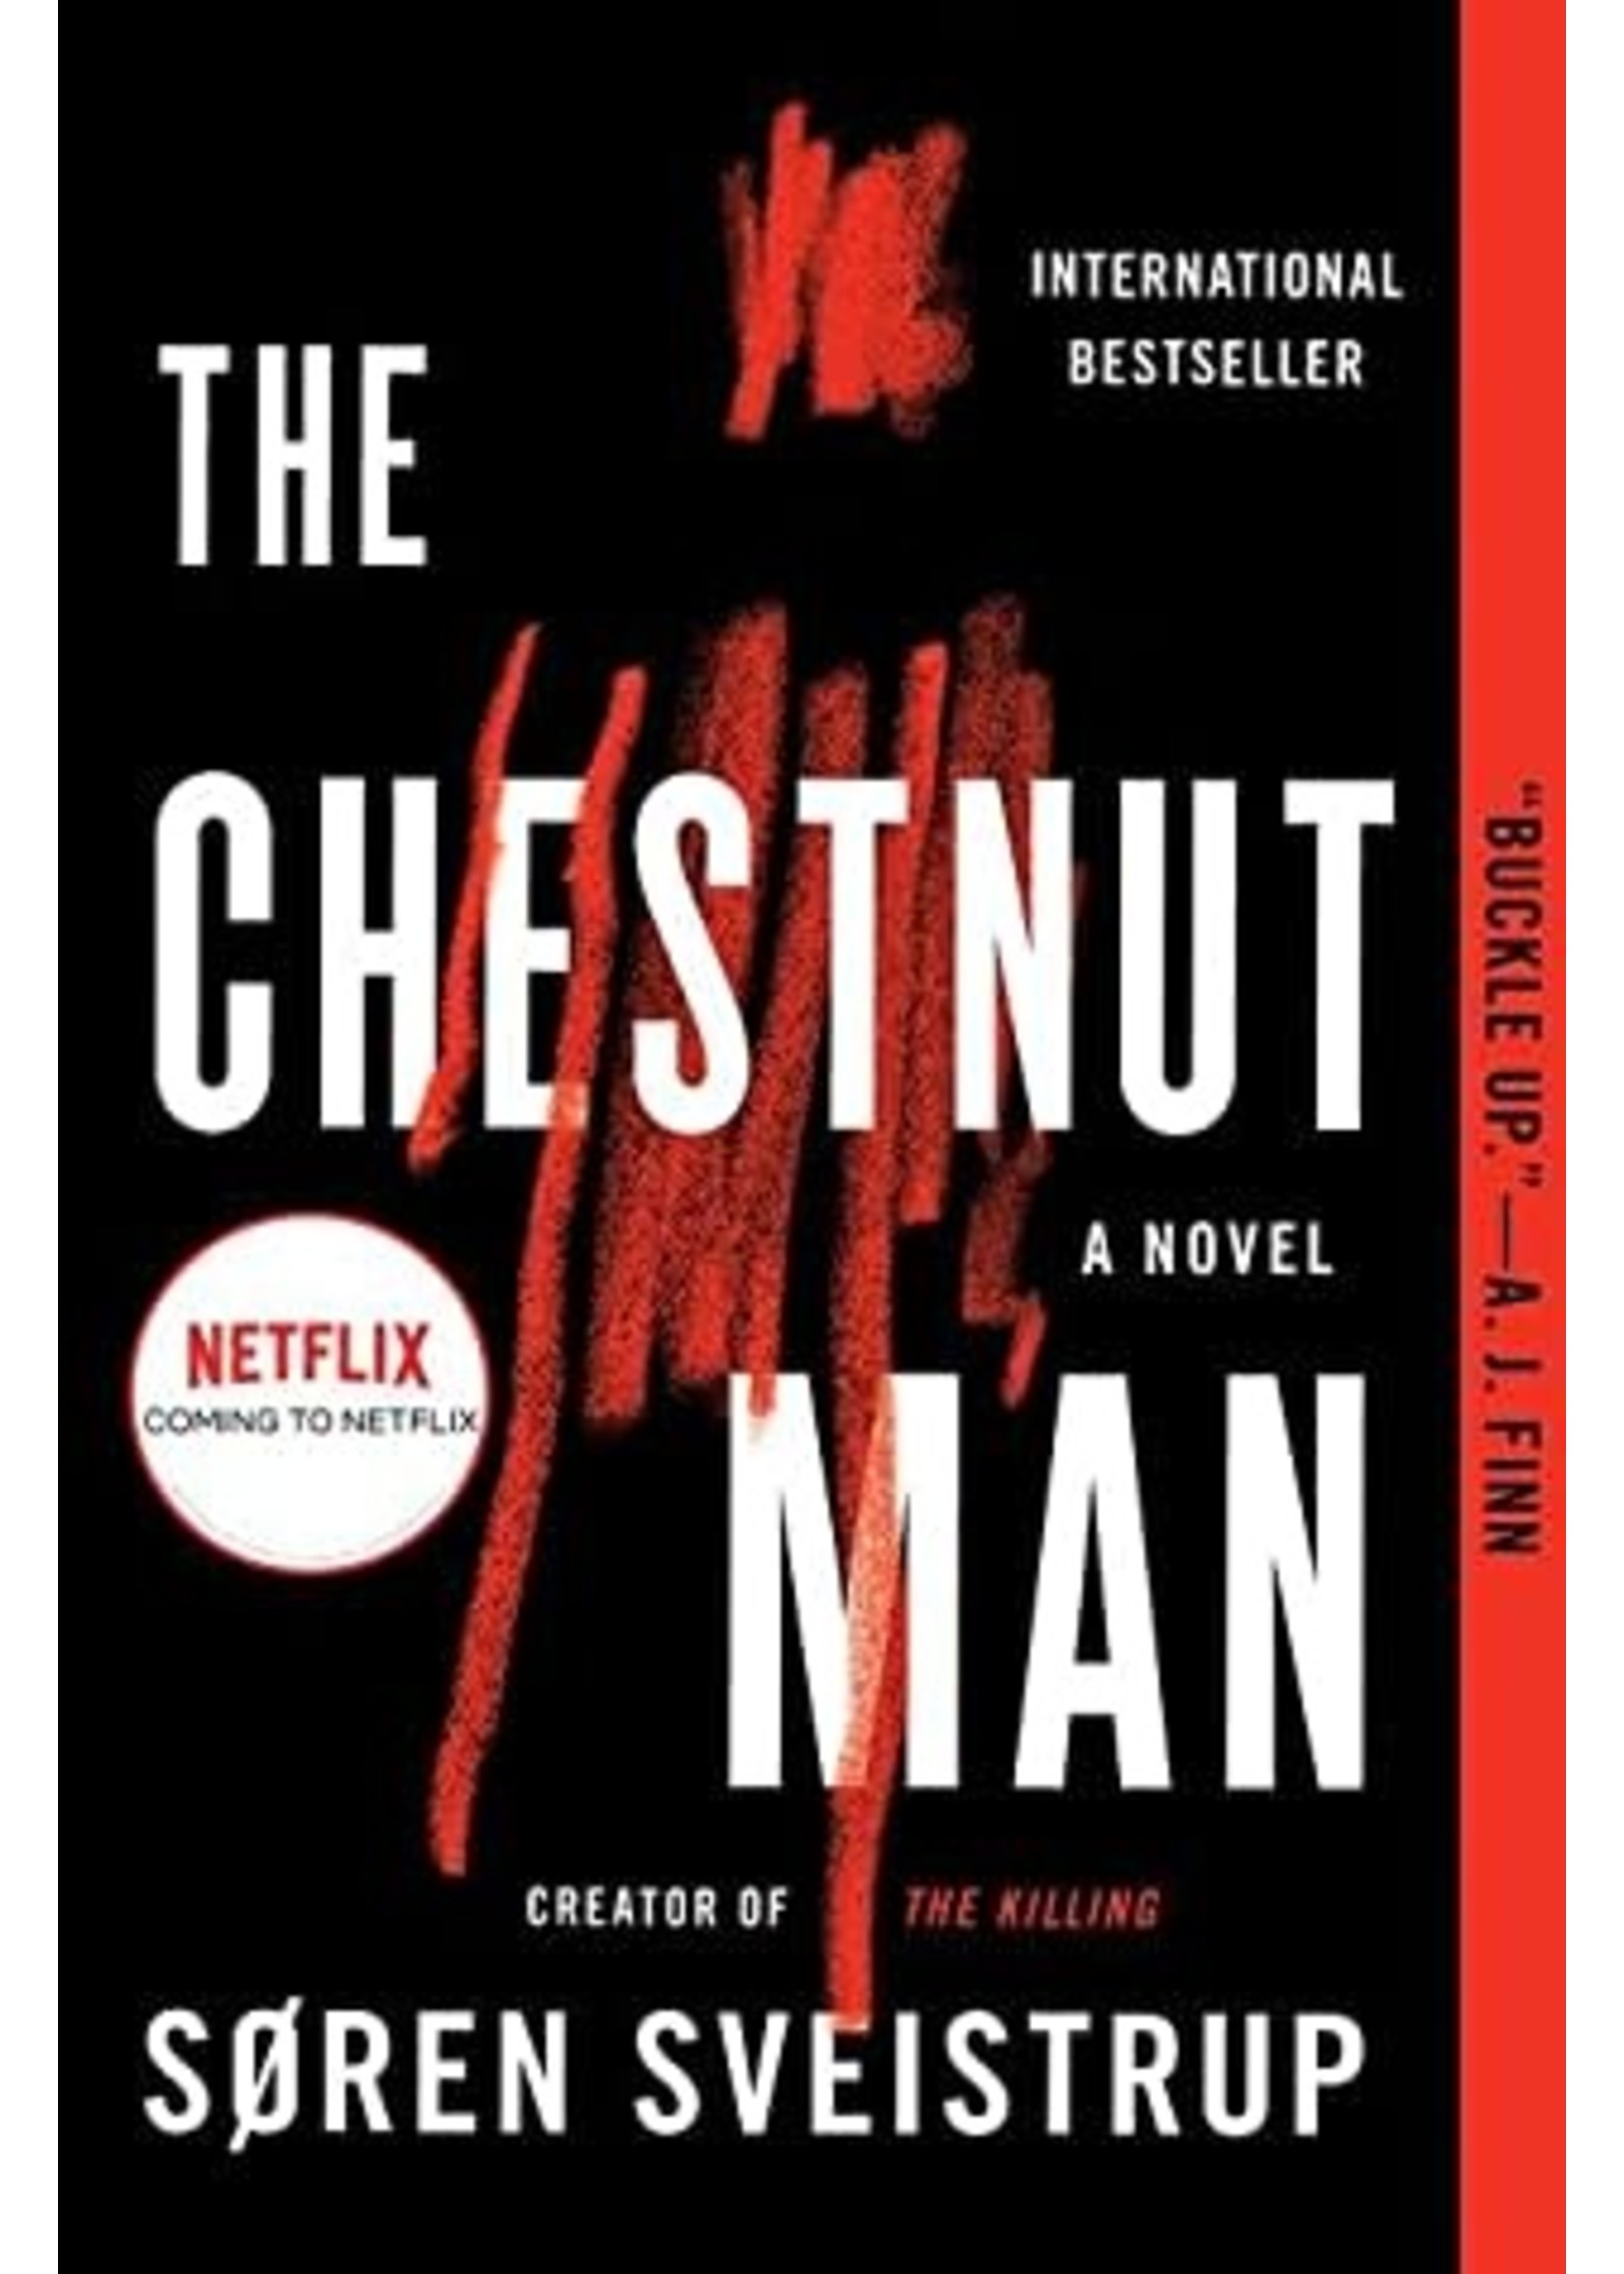 The Chestnut Man by Søren Sveistrup,  Caroline Waight